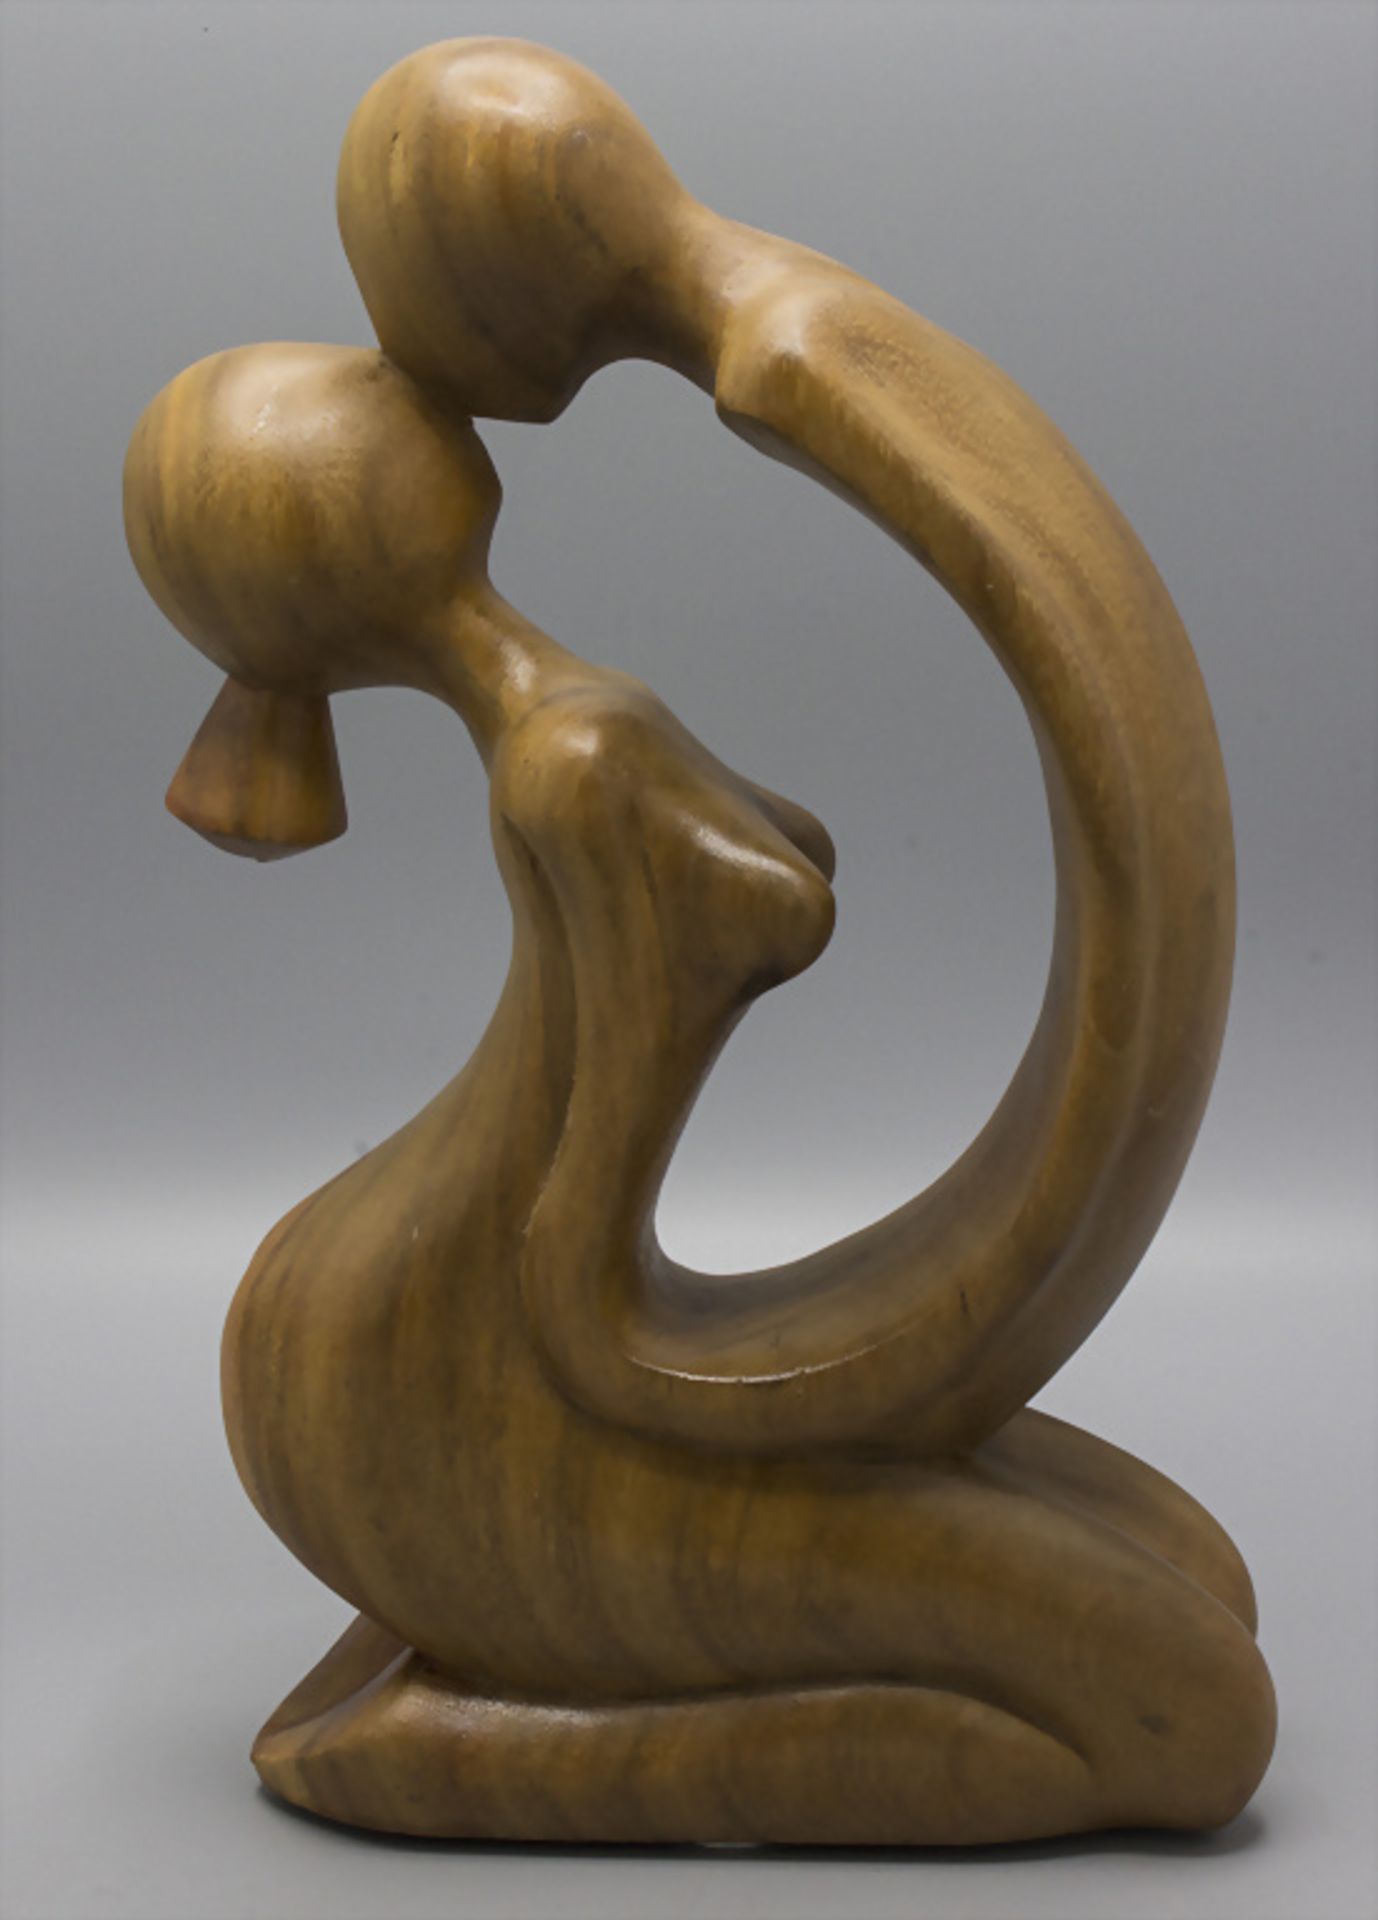 Abstrakte Holz-Skulptur 'Liebespaar' / An abstract wooden sculpture 'lovers' - Image 2 of 2